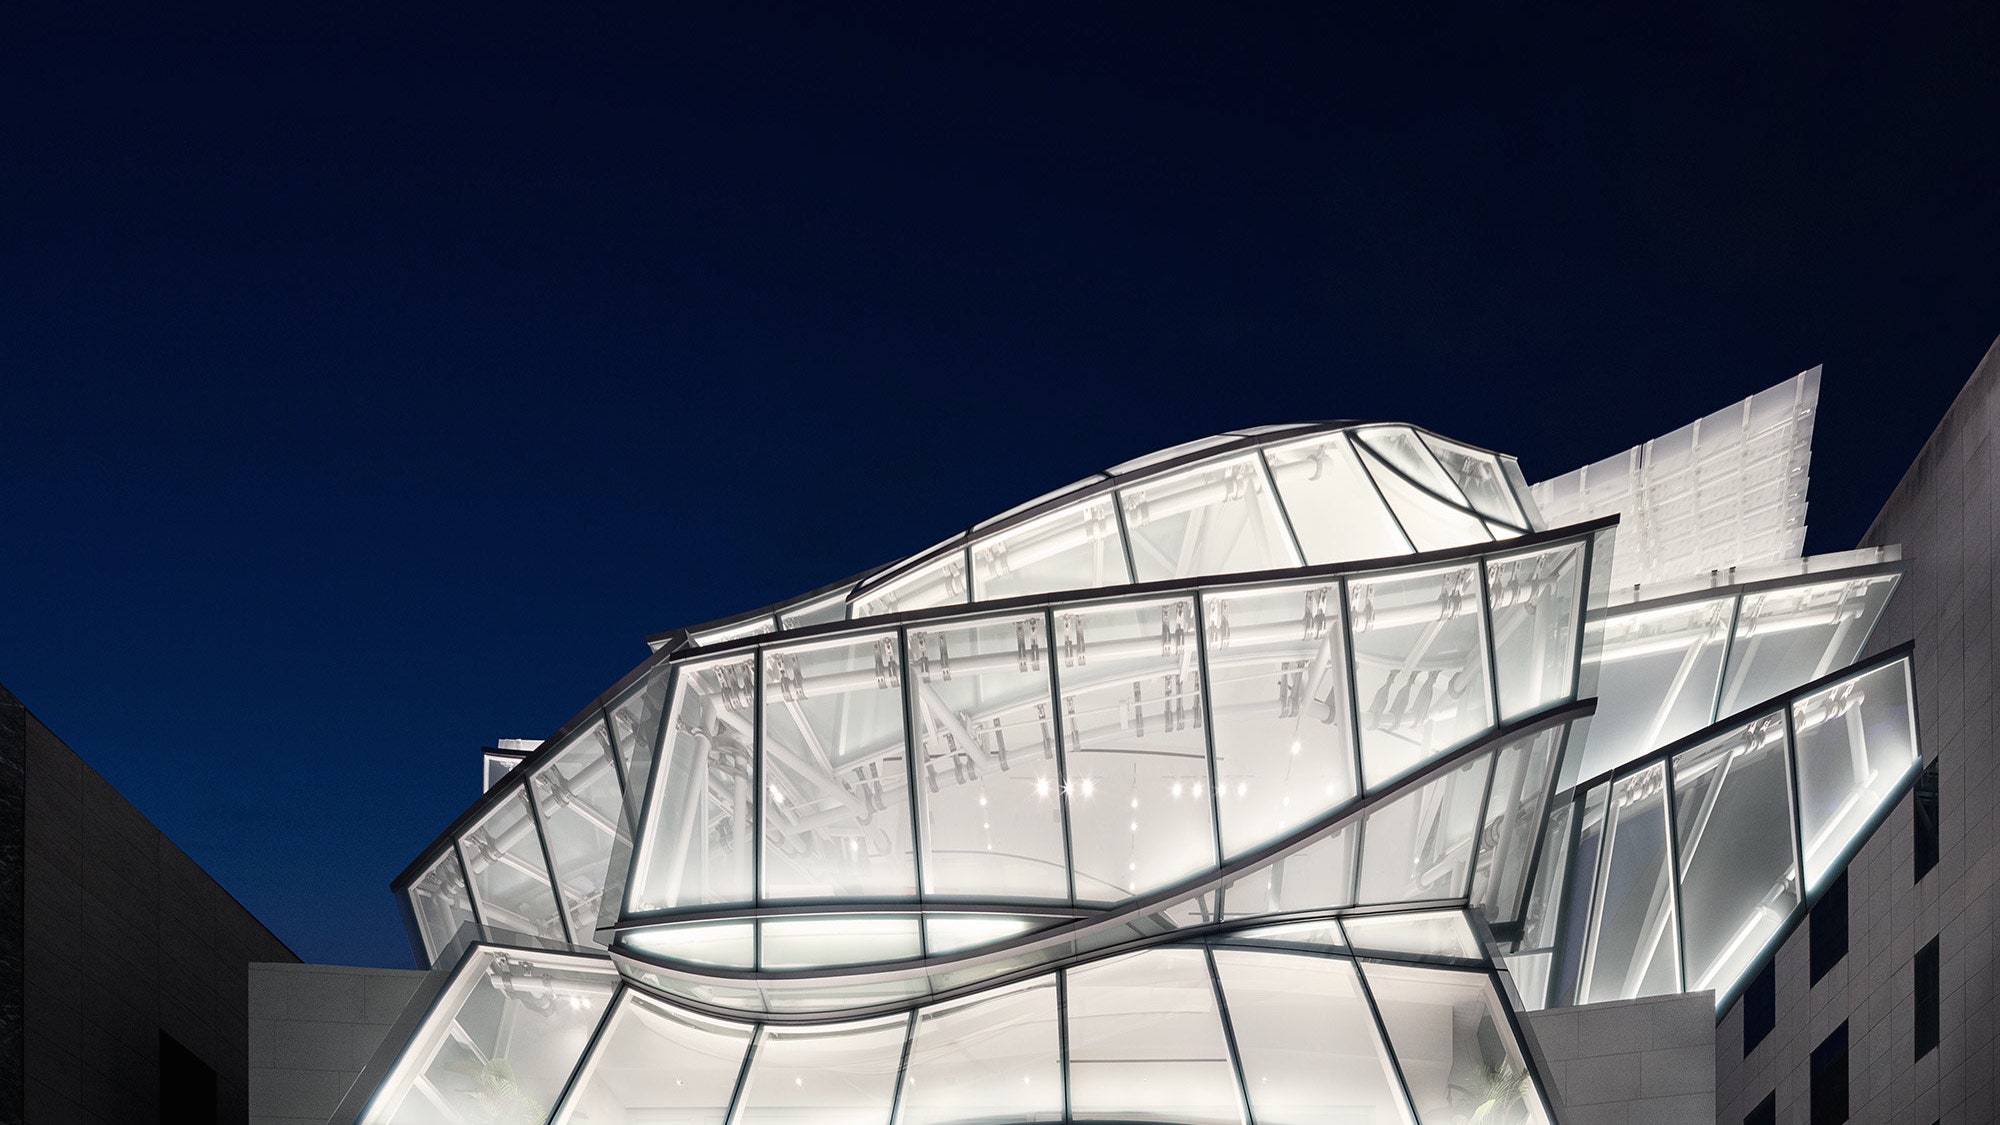 Бутик Louis Vuitton по проекту Фрэнка Гери и Питера Марино в Сеуле